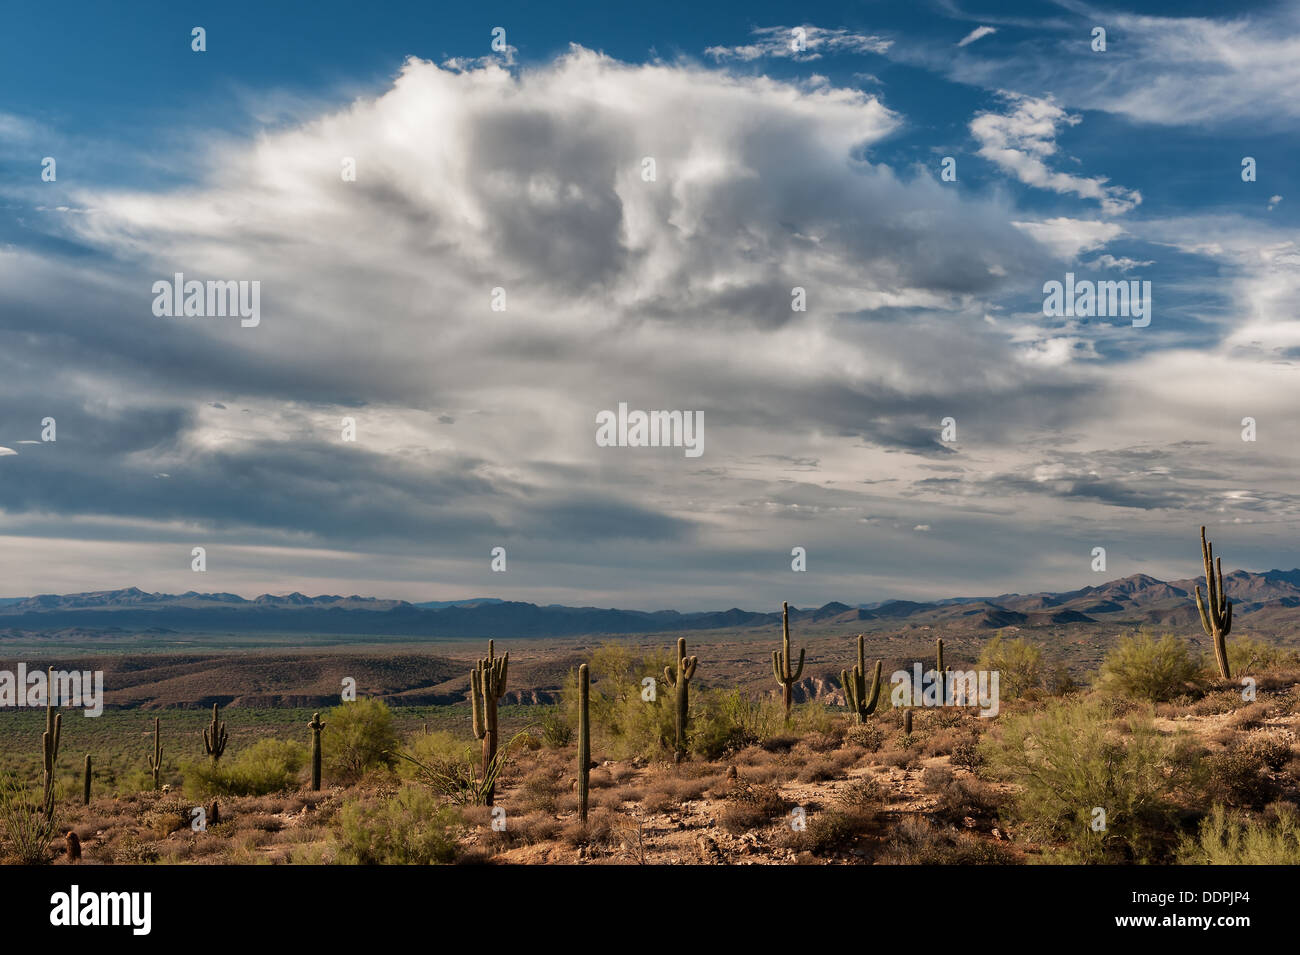 Stellung des Saguaro-Kaktus in der Wüste von Arizona erwarten einen nahenden Sturm. Stockfoto